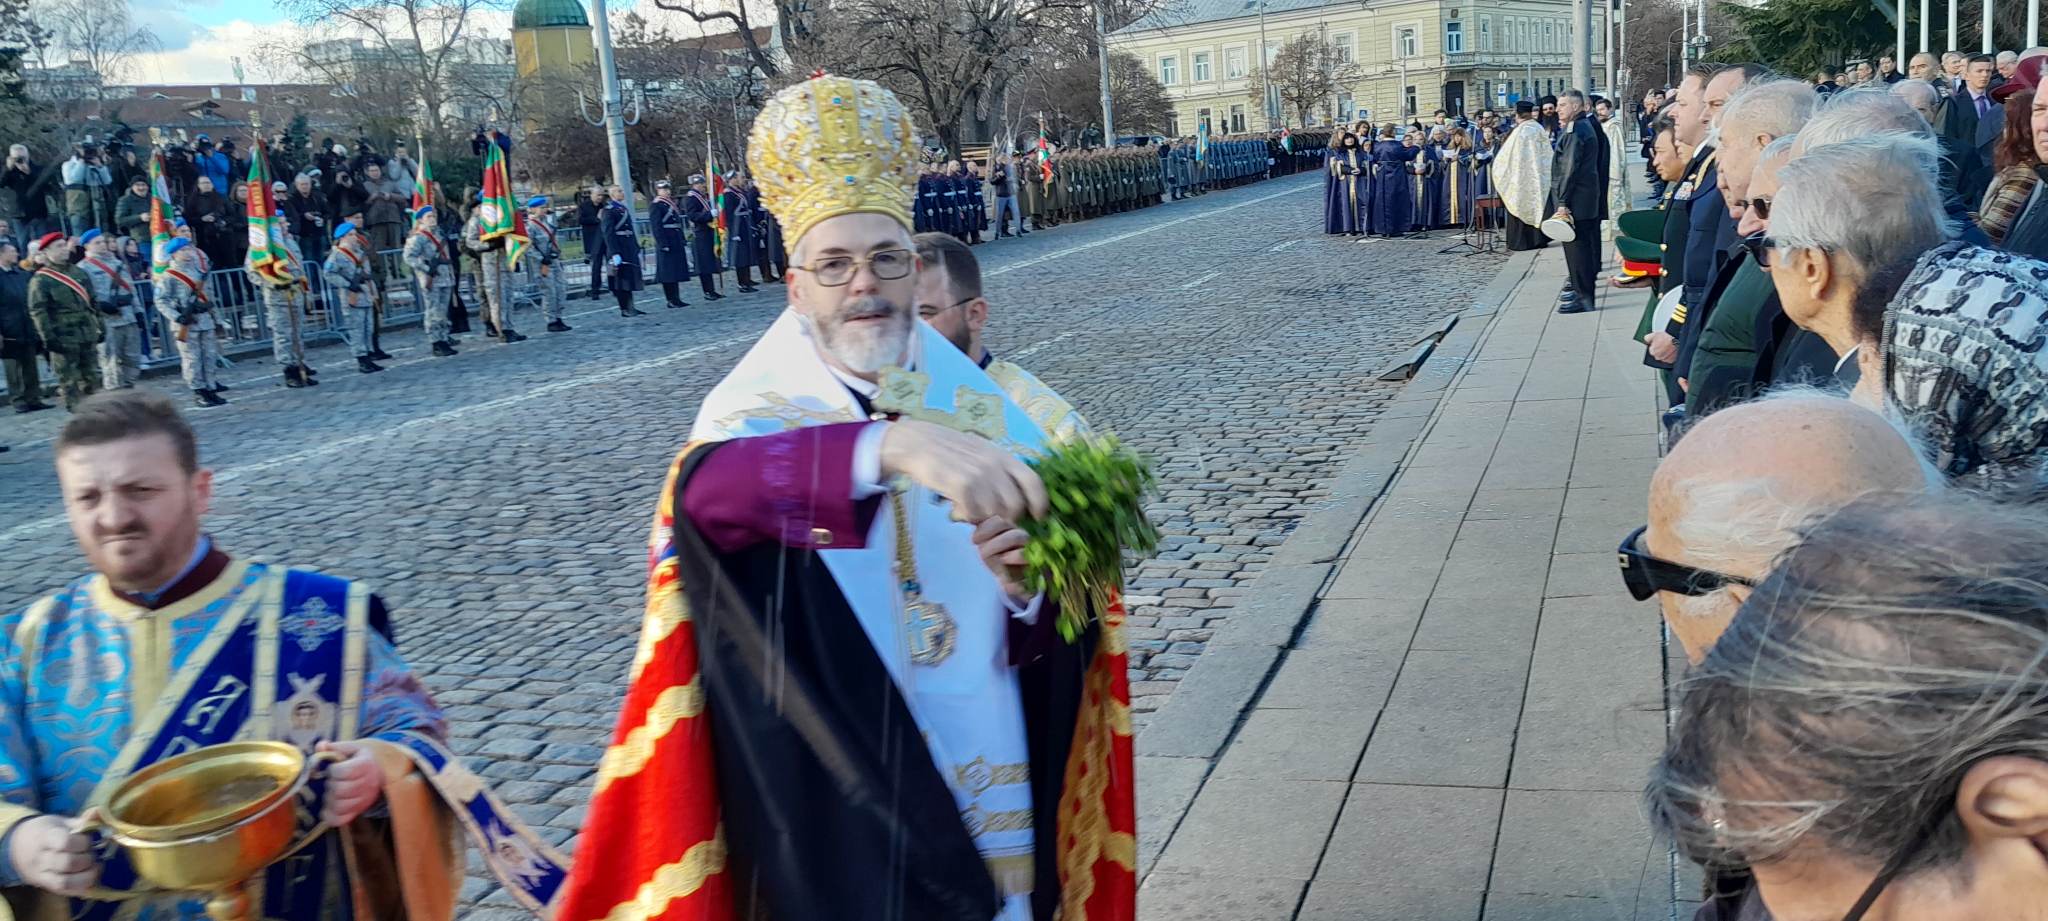 Час по-скоро да спрат войните, междуособиците и кръвопролитията, призова българския патриарх Неофит